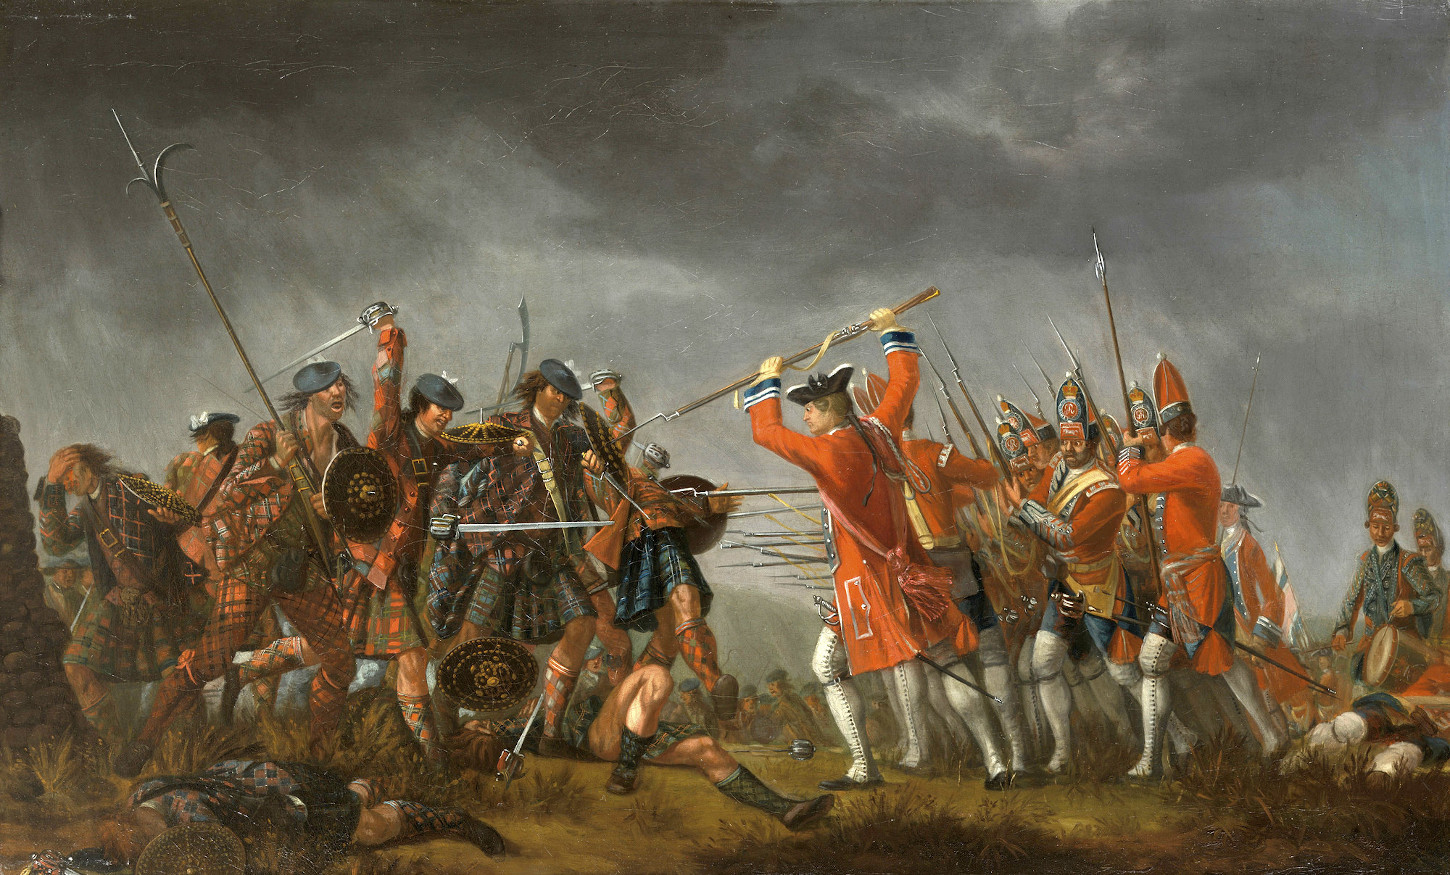 La bataille de Culloden, huile sur toile de David Morier (XVIIIe siècle). Royal Collection Trust.: RCIN 401243.